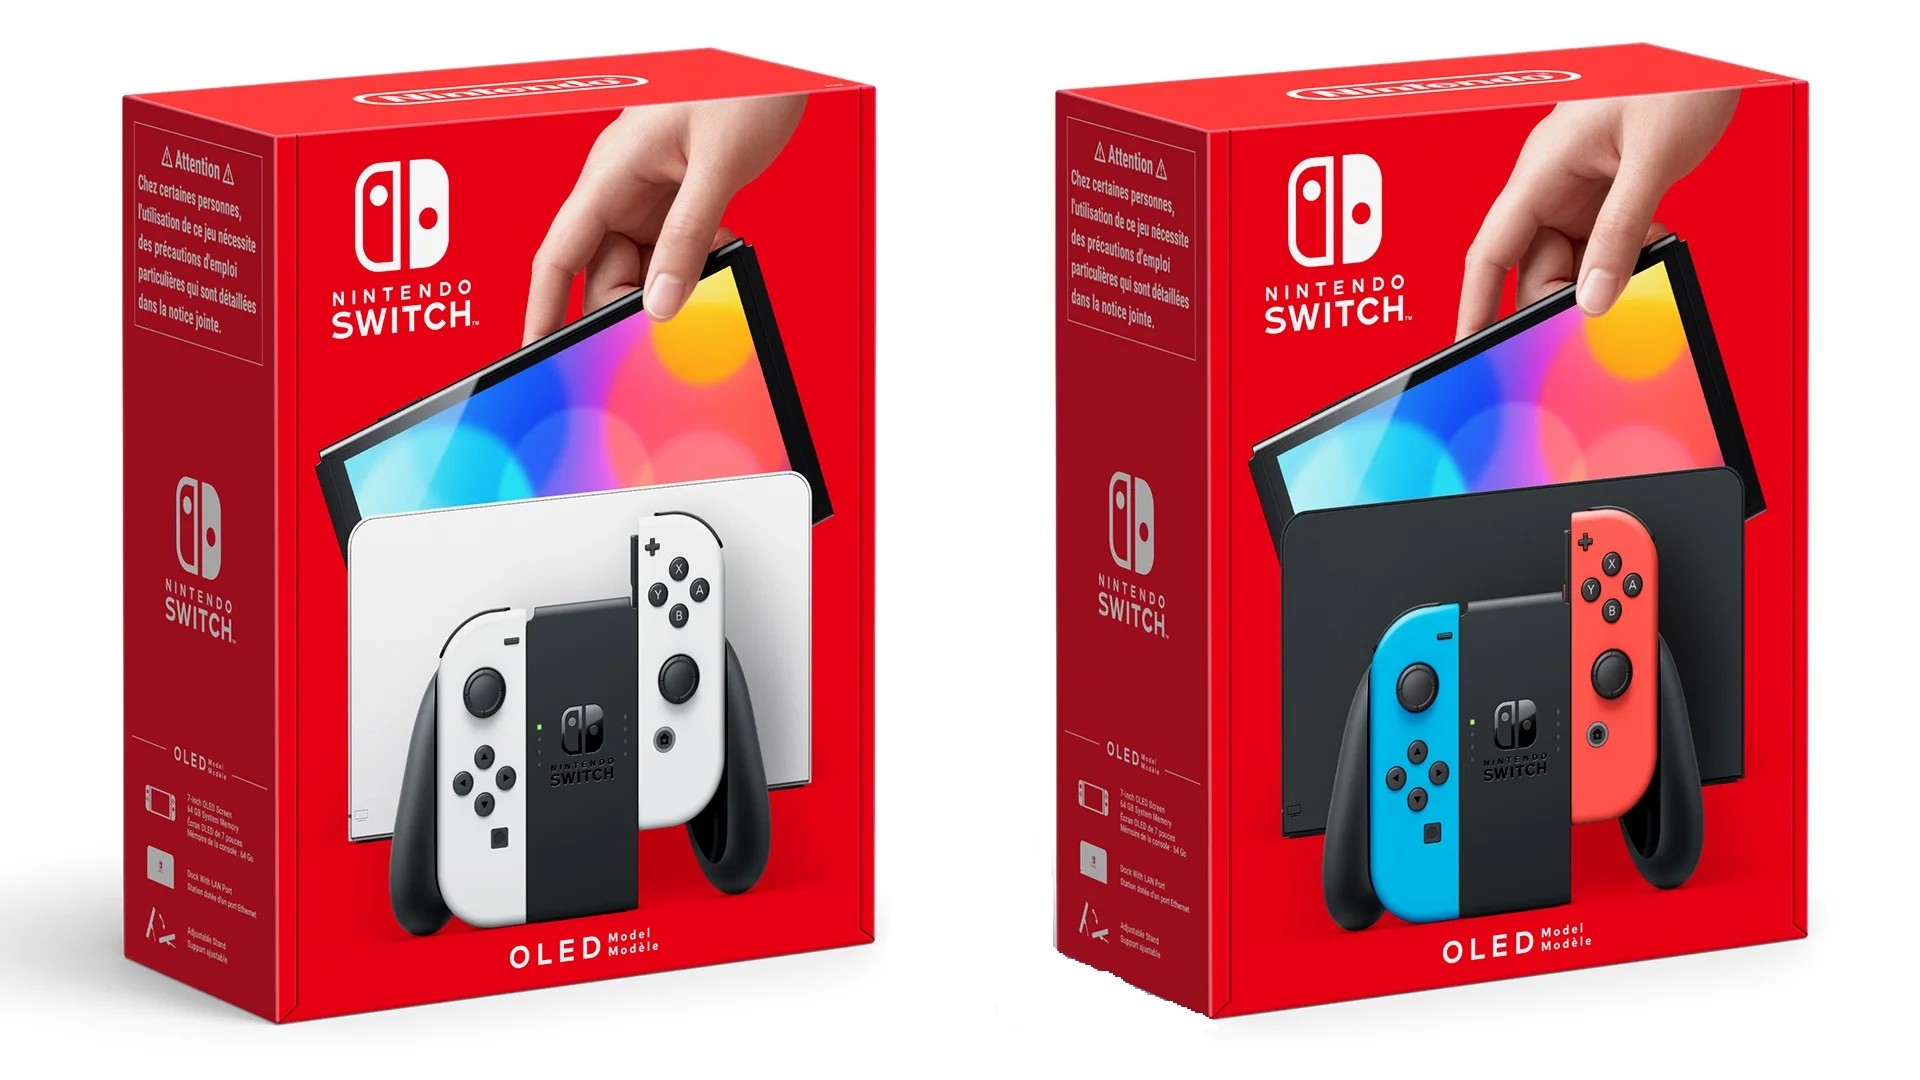 The Nintendo Switch OLED Box